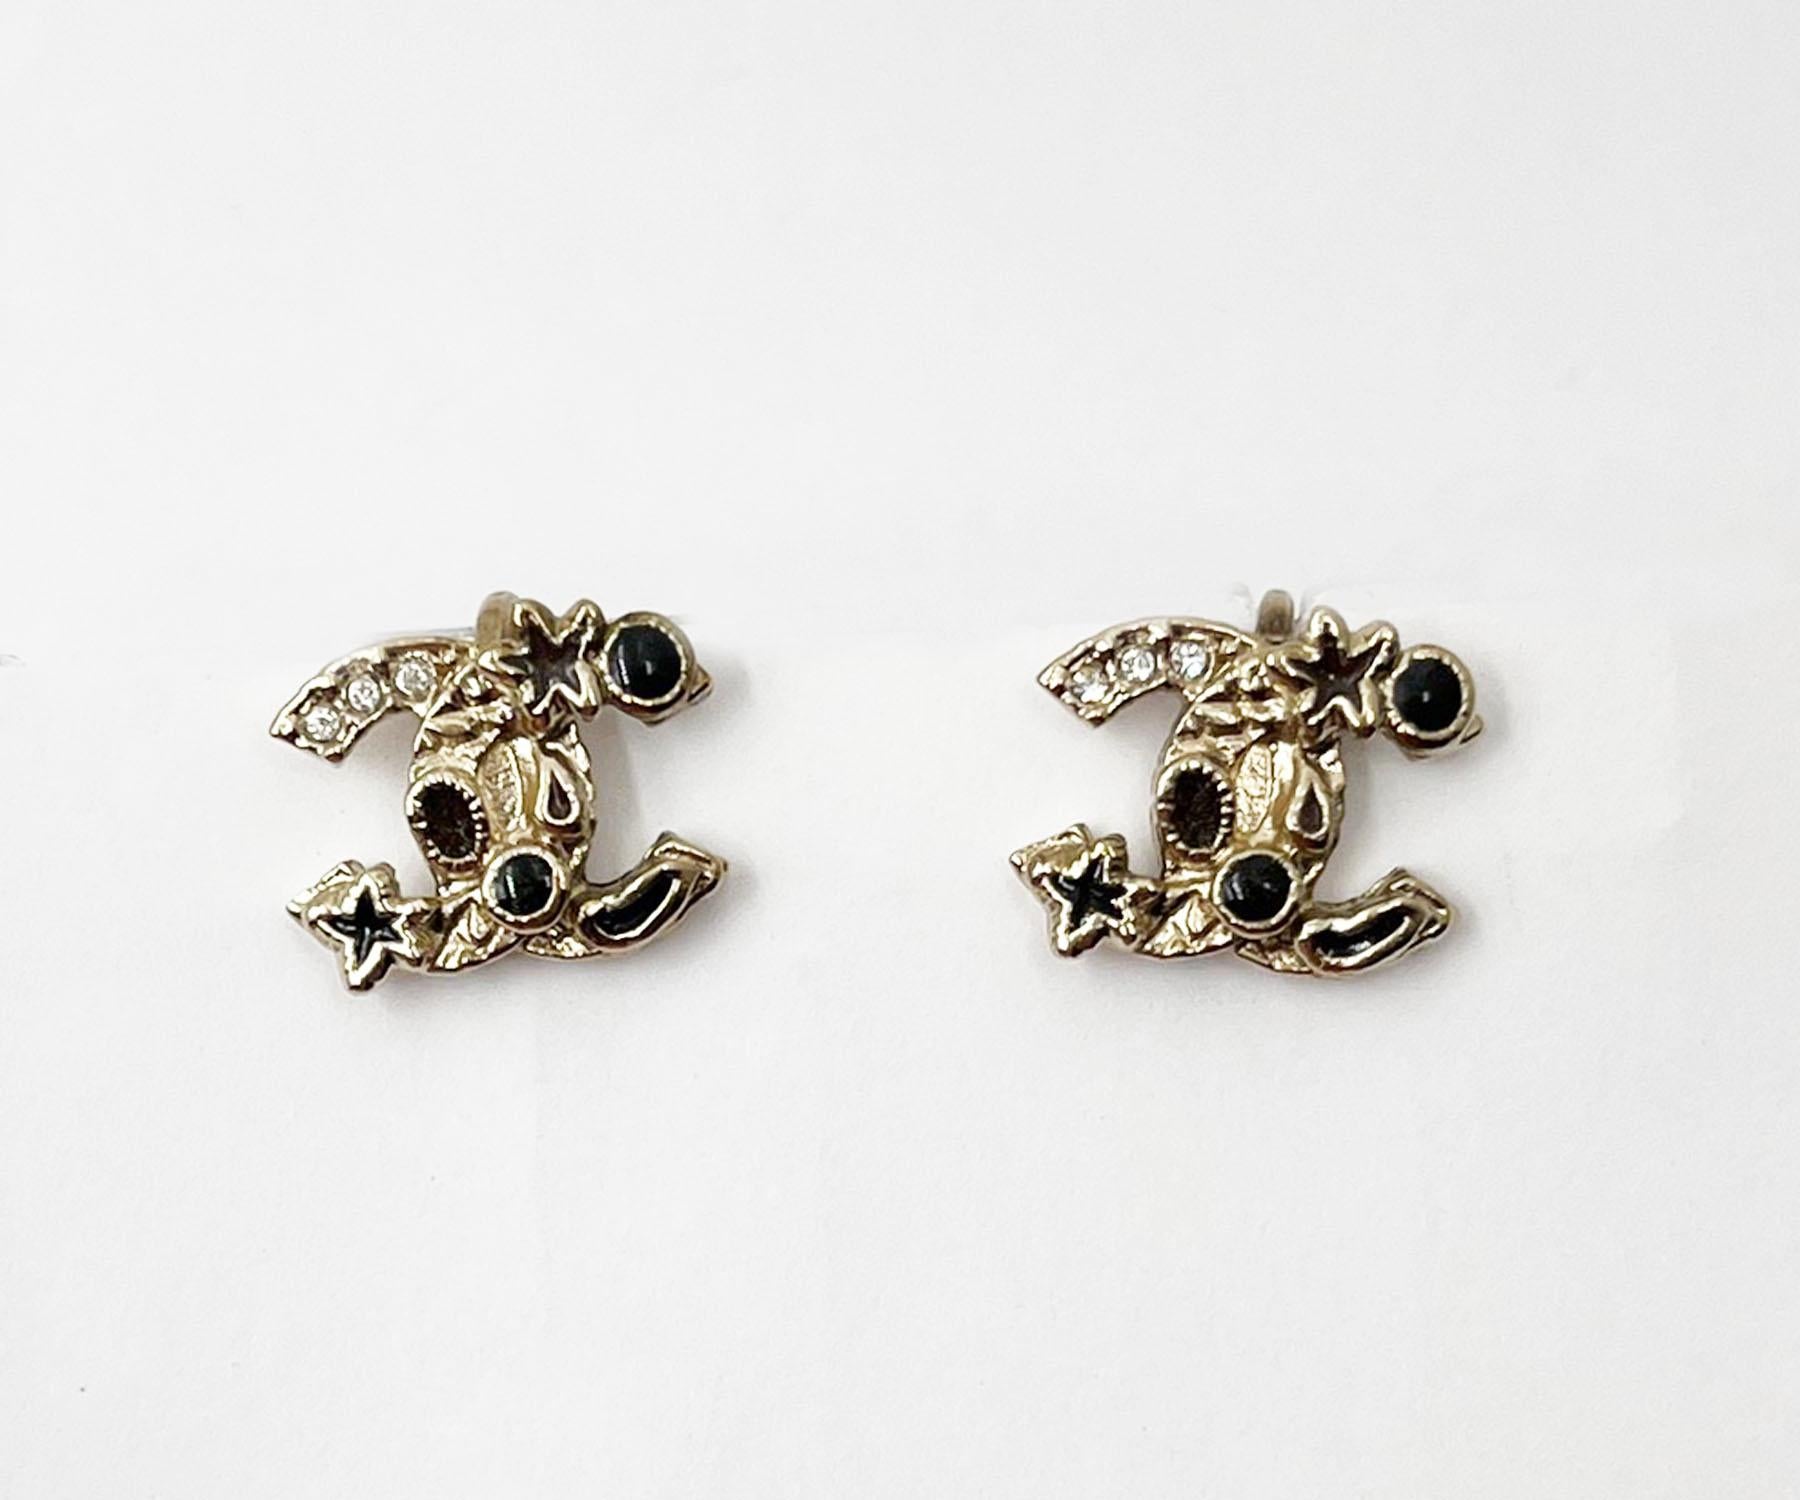 Chanel Gold CC Schwarze Seestern-Ohrclips an Ohrringen

*Markierung 11
*Hergestellt in Frankreich

-Sie ist ungefähr 0,5